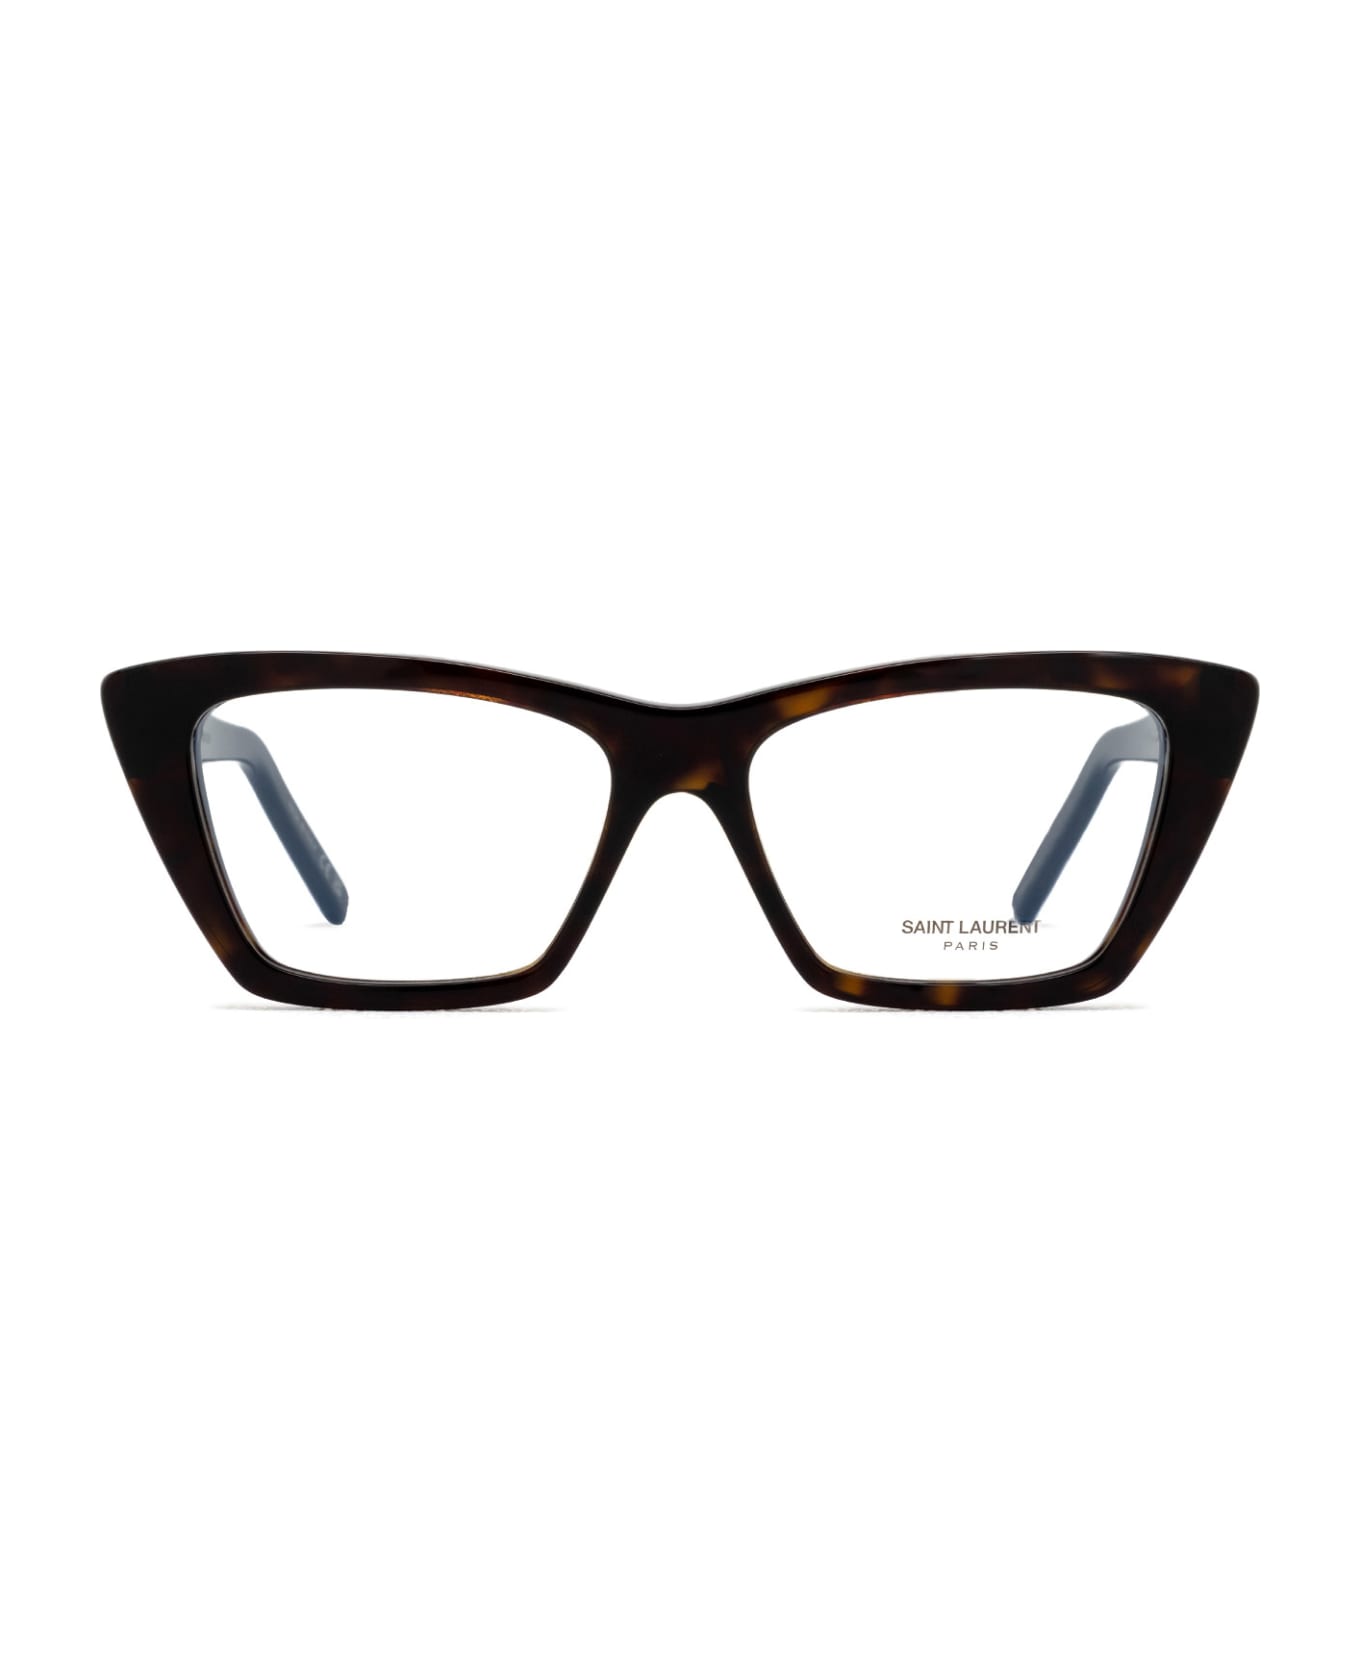 Saint Laurent Eyewear Sl 276 Opt Havana Glasses - Havana アイウェア